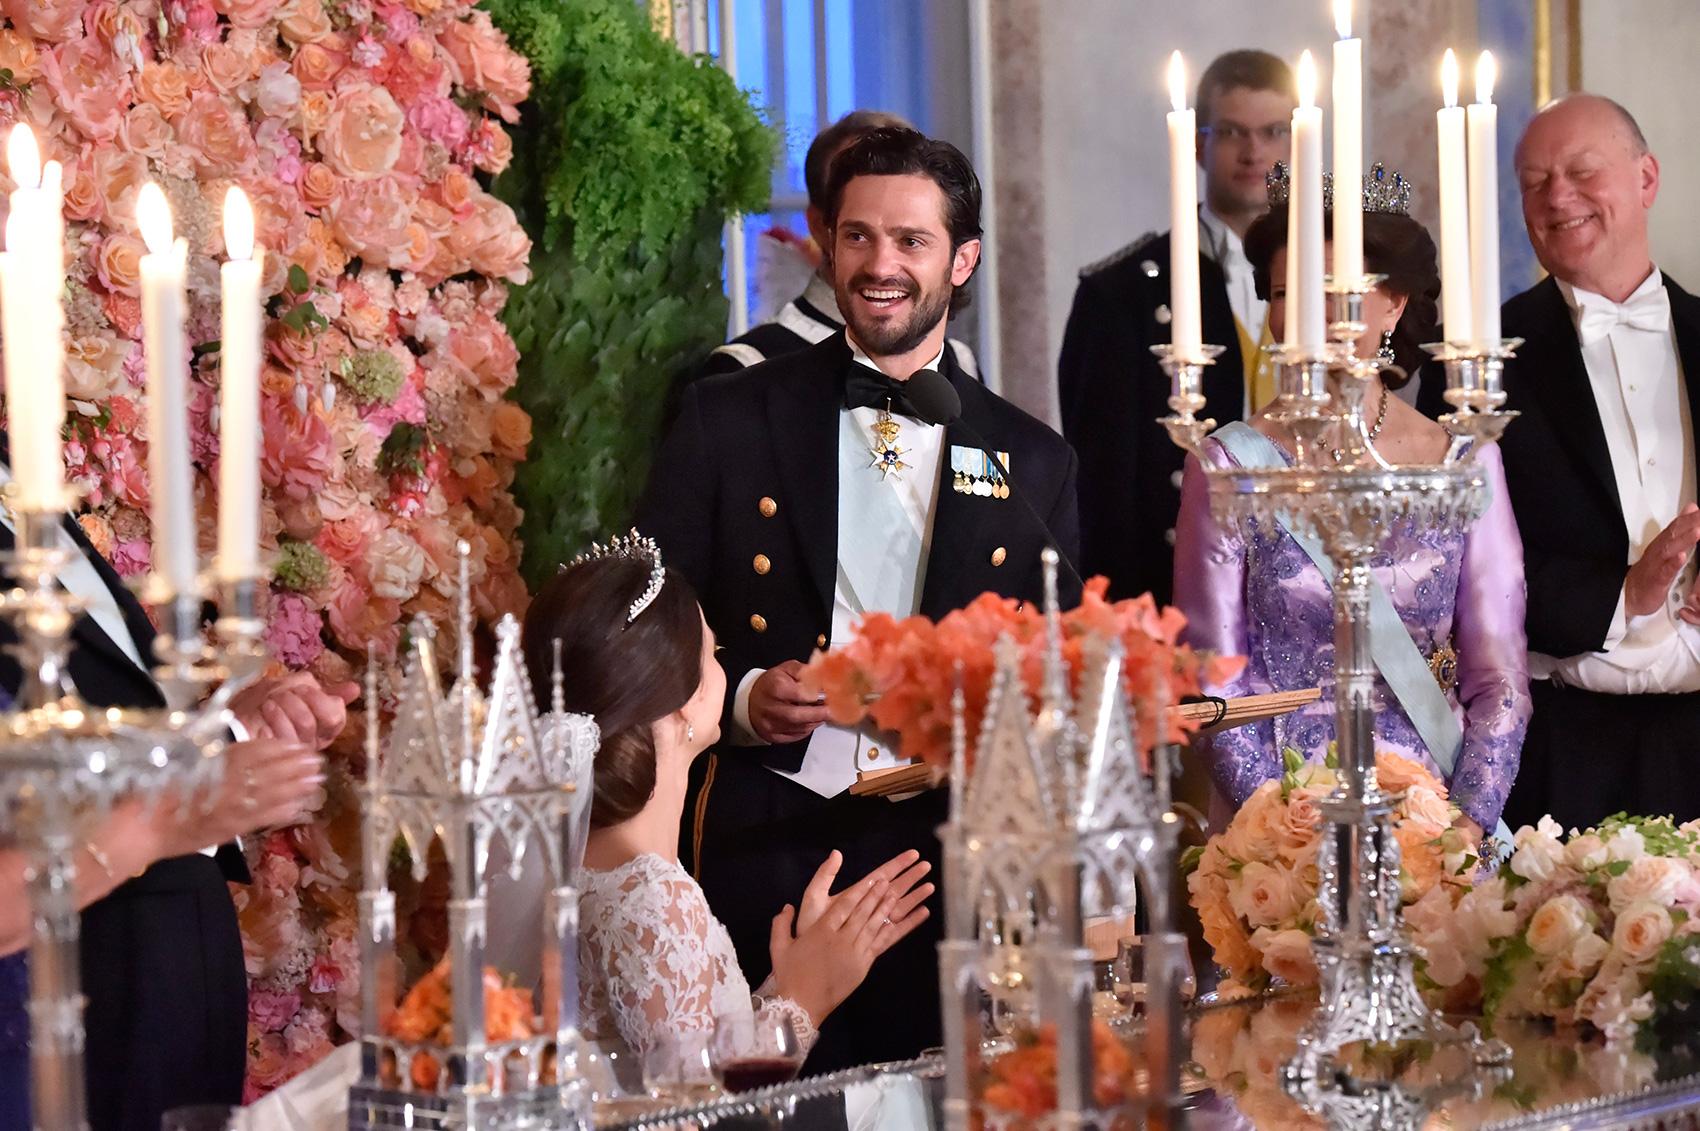 Bröllopet mellan Sofia och prins Carl Philip gick av stapeln i juni.